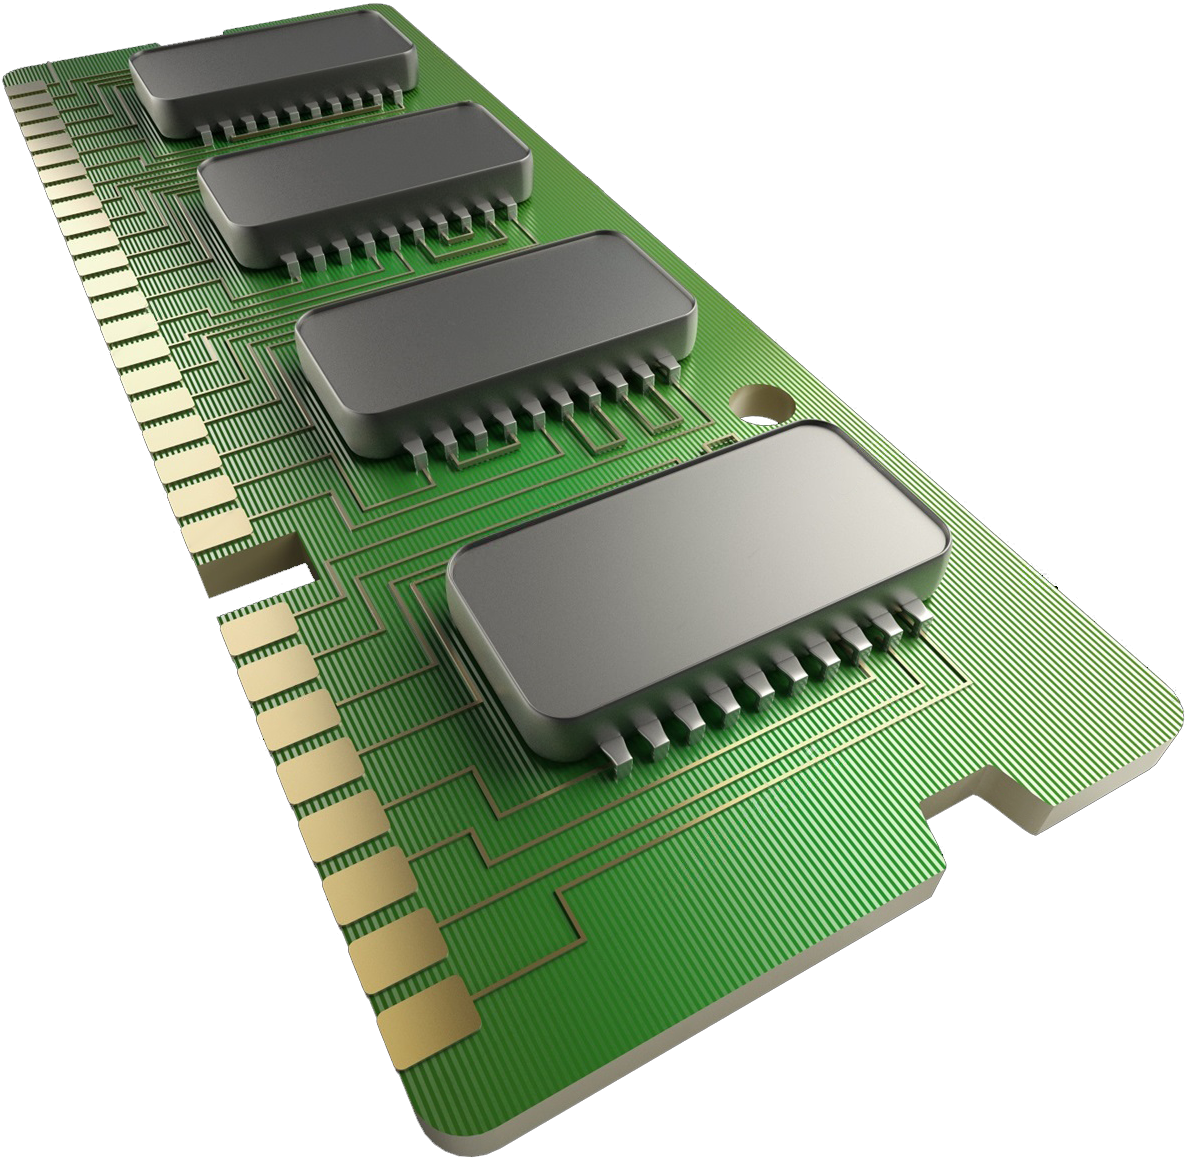 Ram file. 128 GB Ram. Ram чип. Оперативка 128 ГБ. Микросхема оперативной памяти.